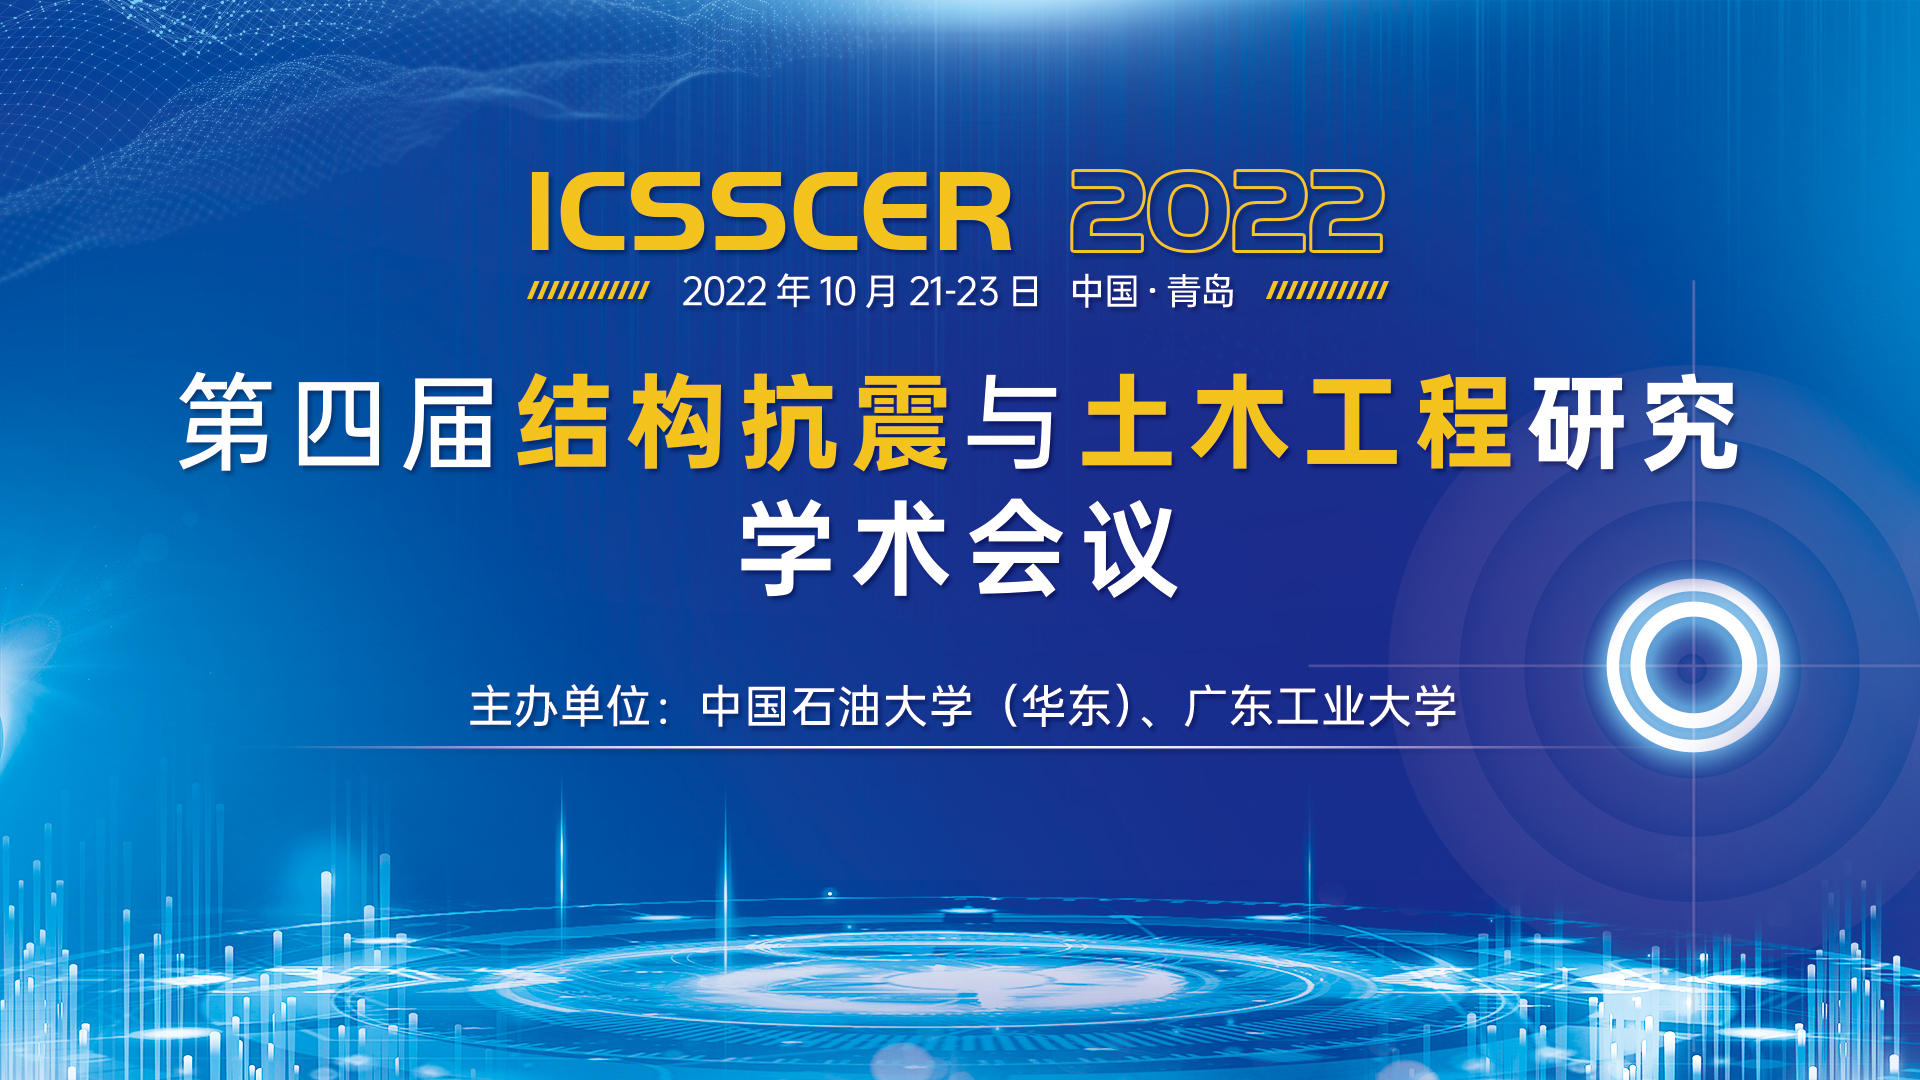 10月青岛-ICSSCER-主视觉16x9.jpg